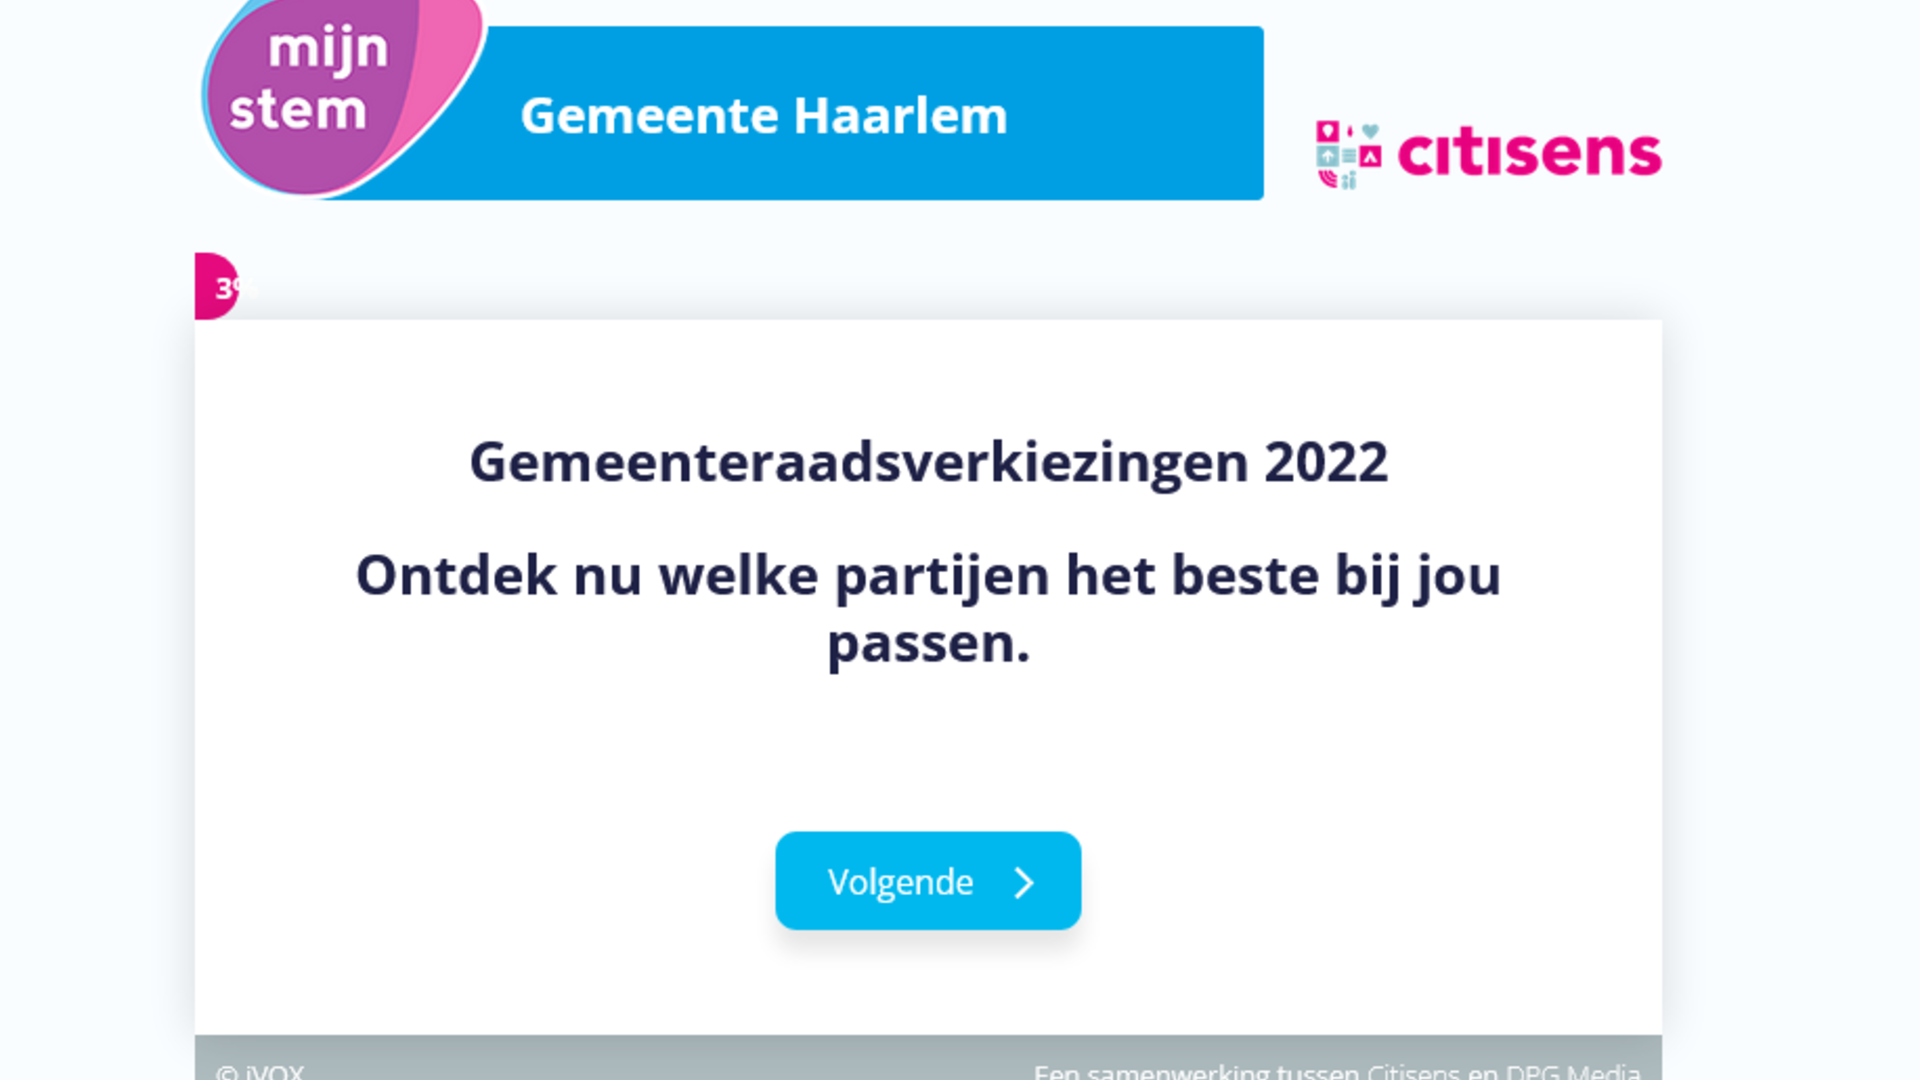 haarlem.mijnstem.nl